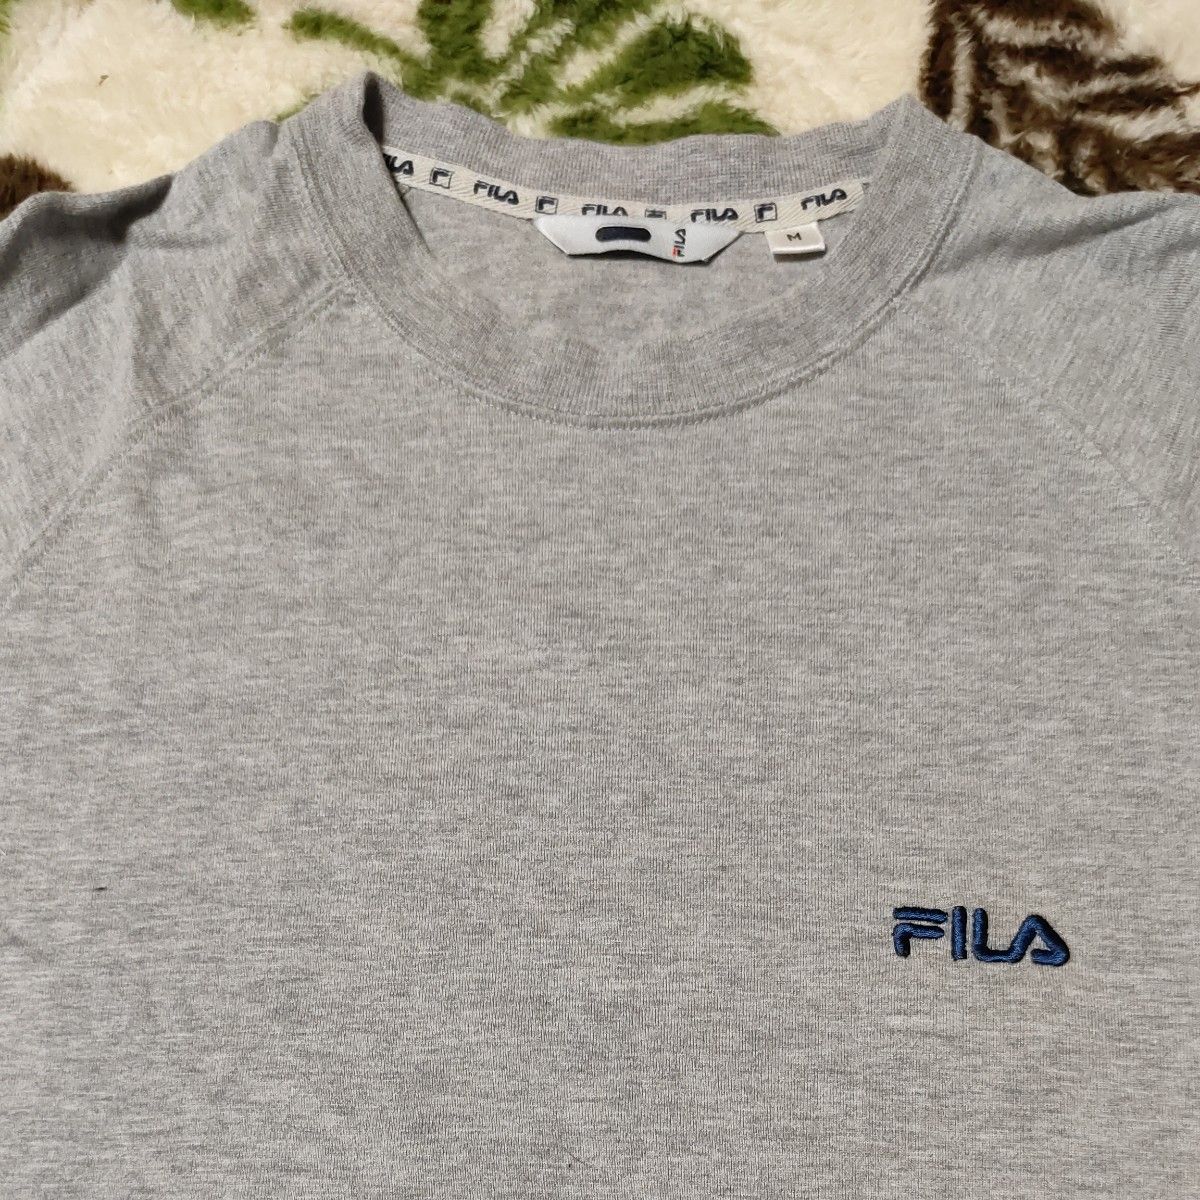 FILA フィラ Tシャツ ワンポイント グレー 福助 パジャマ 部屋着 トップス 紺 ネイビー おまとめ 2枚セット